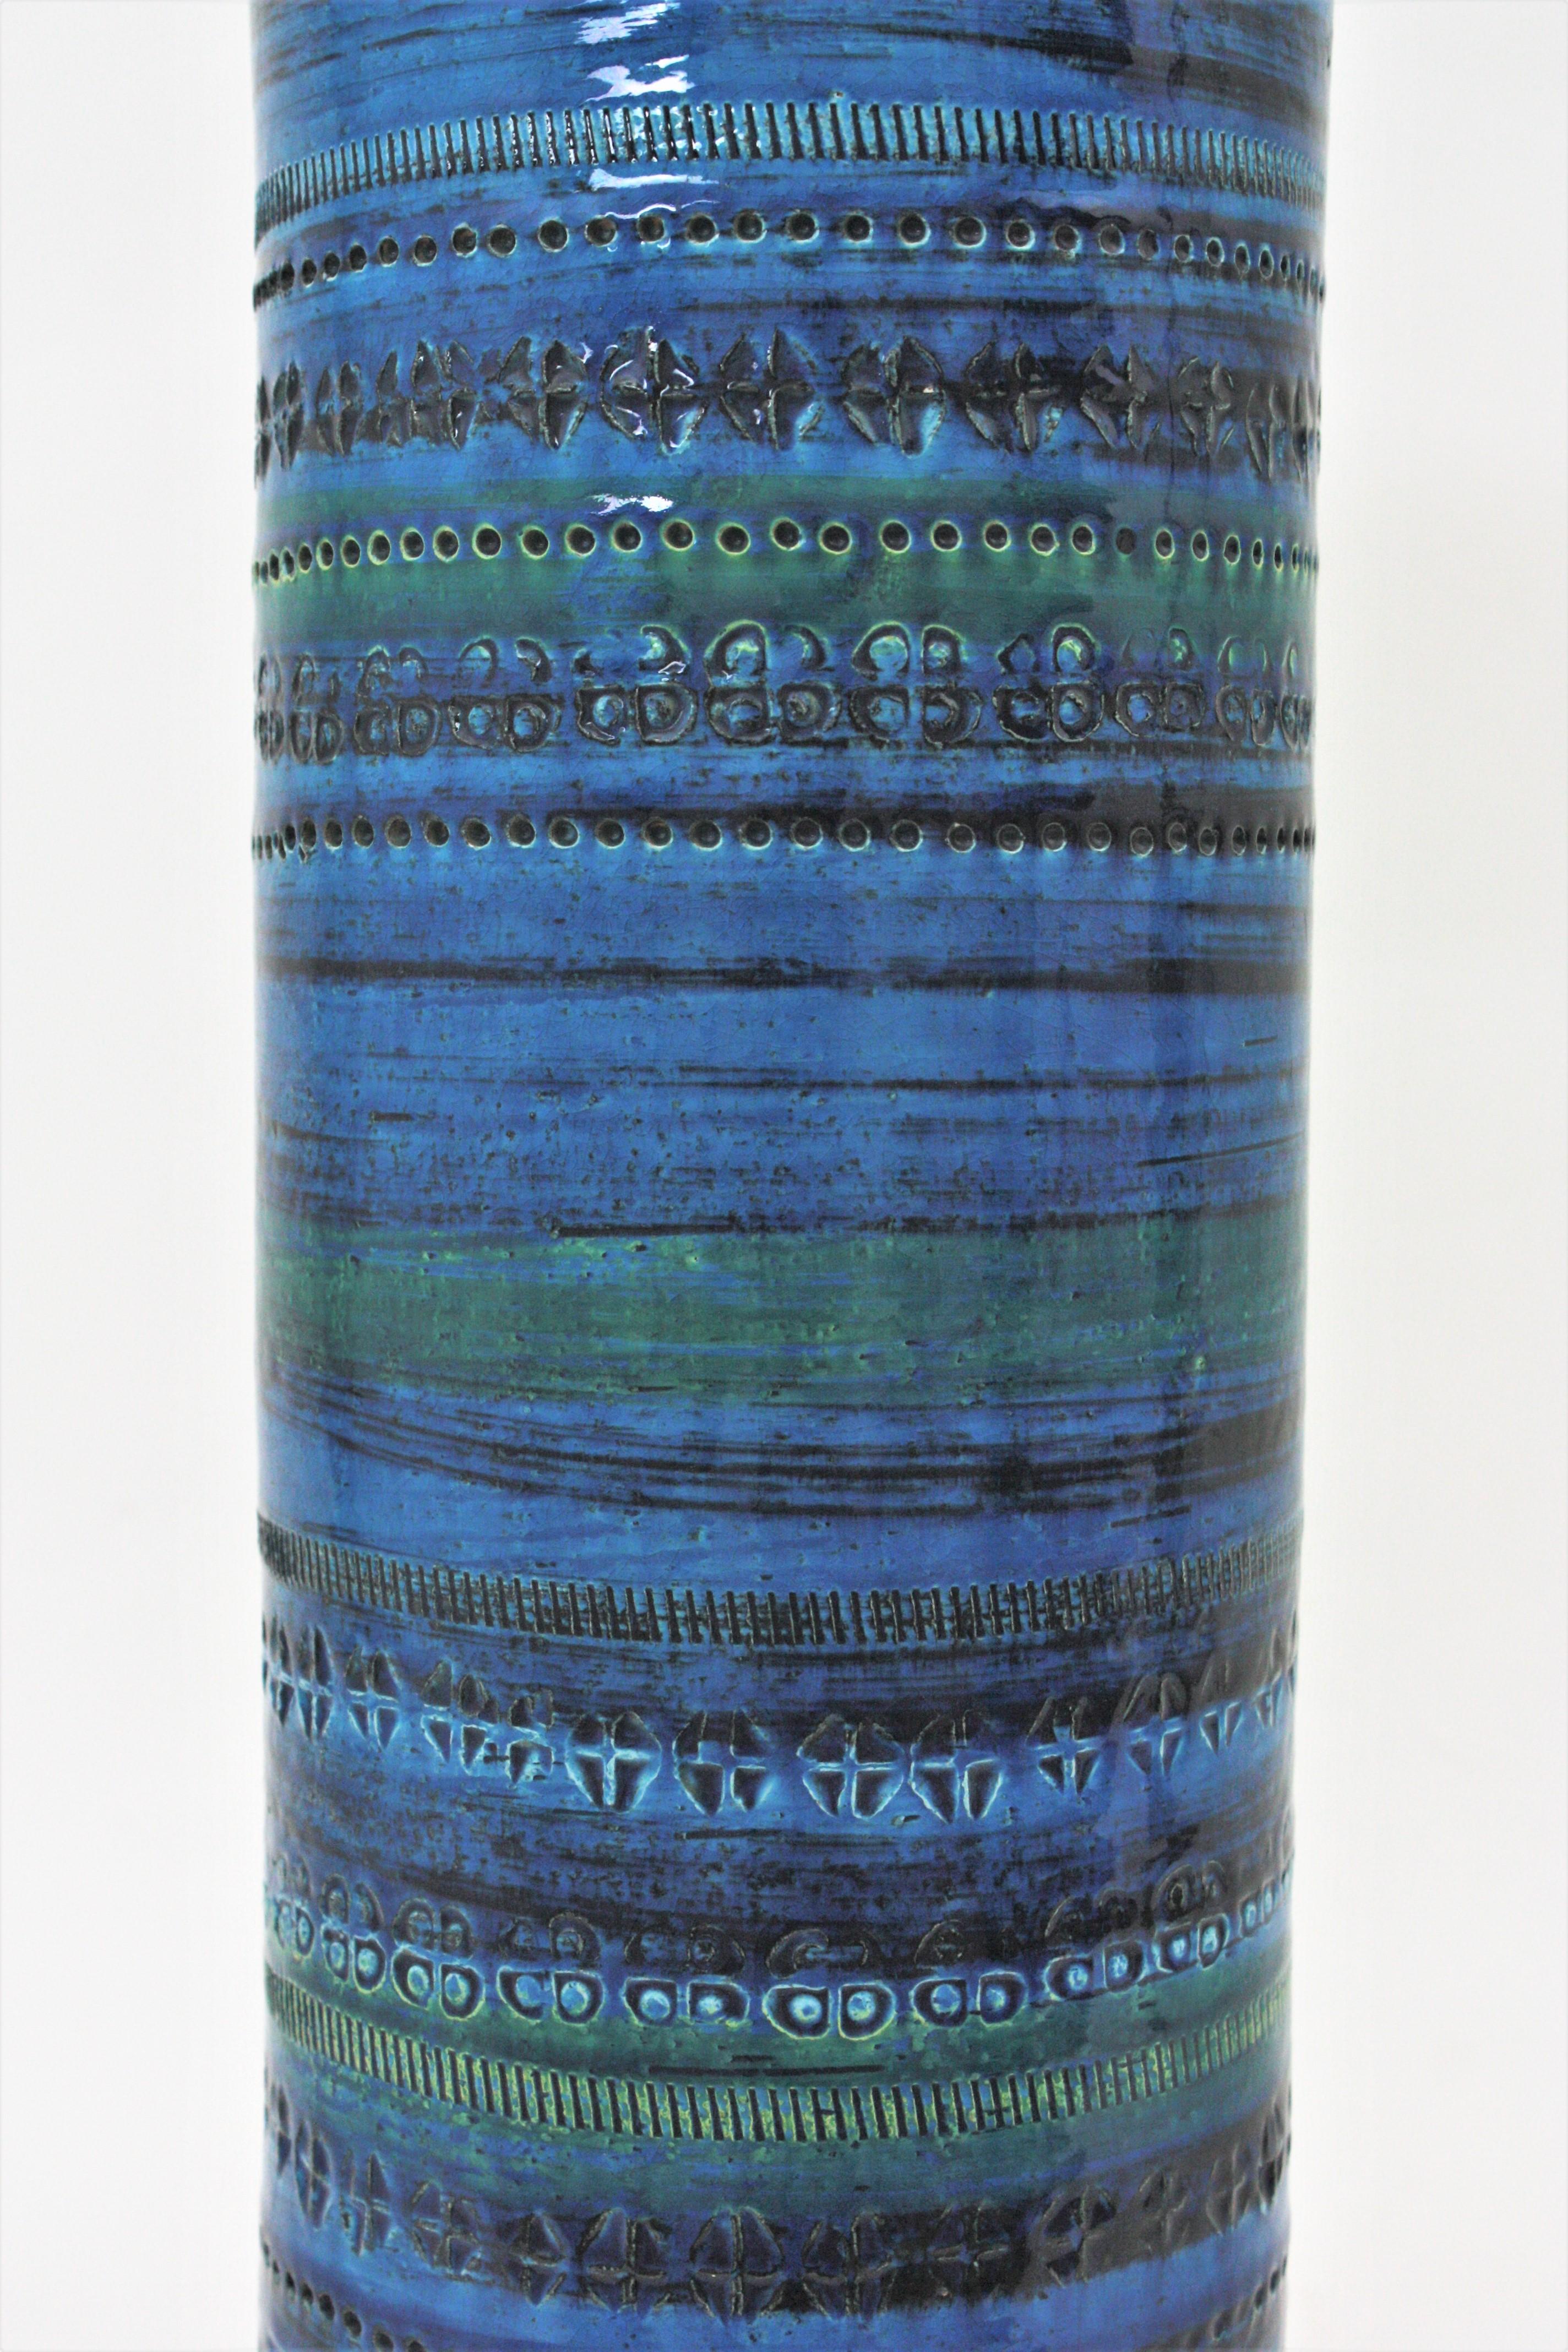 Aldo Londi Bitossi Rimini Blue Glazed Ceramic XL Vase, Italy, 1960s For Sale 3